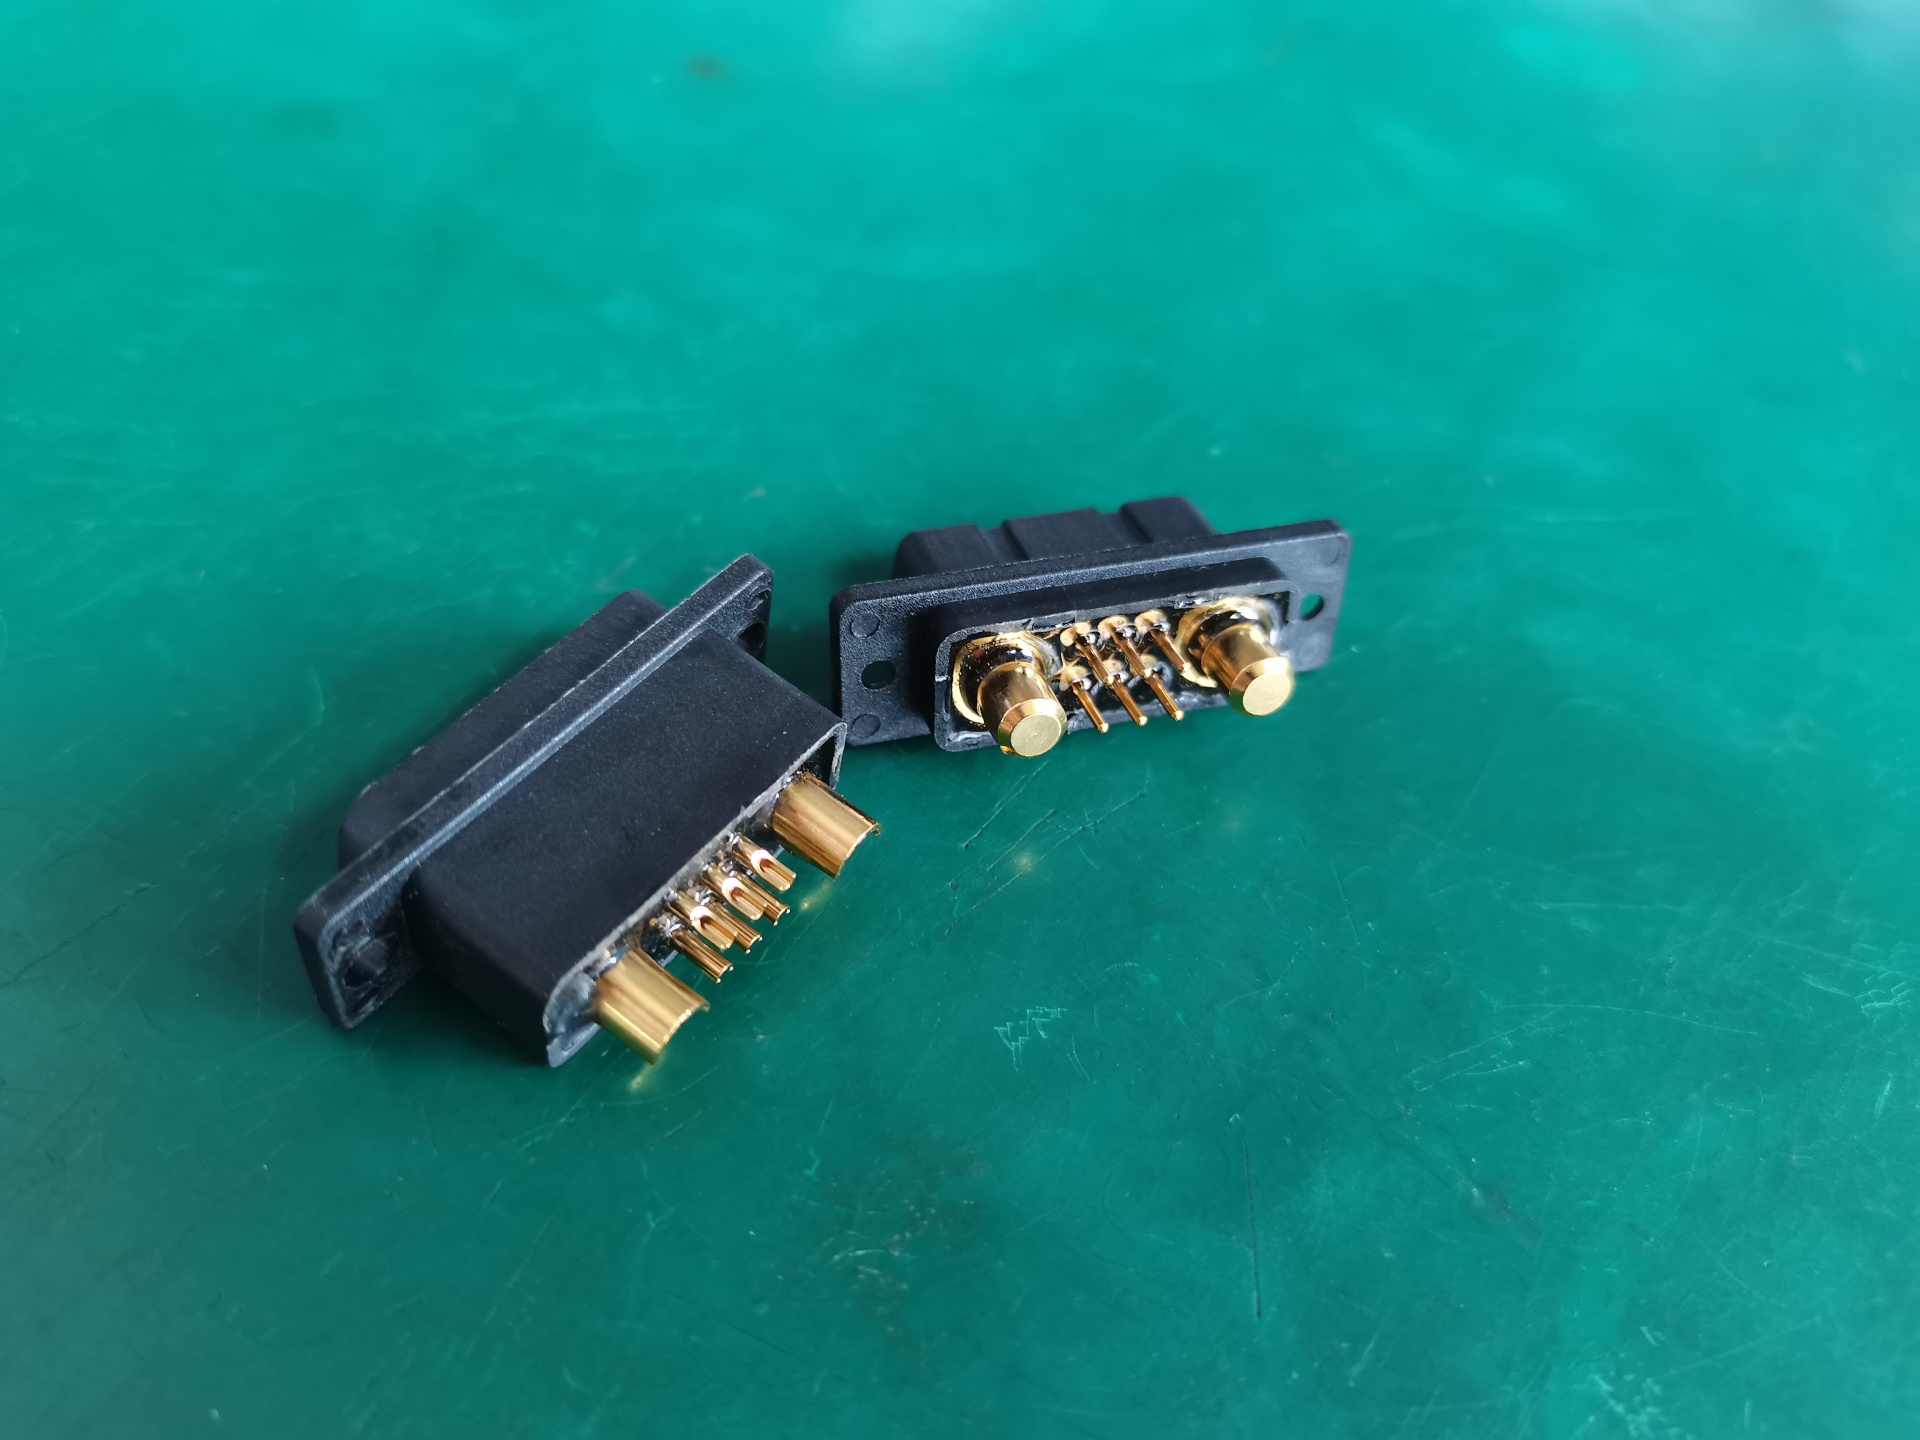 过电流插头座  大电流连接器  可以通过200A至300A电流  可同时传输信号 和电流